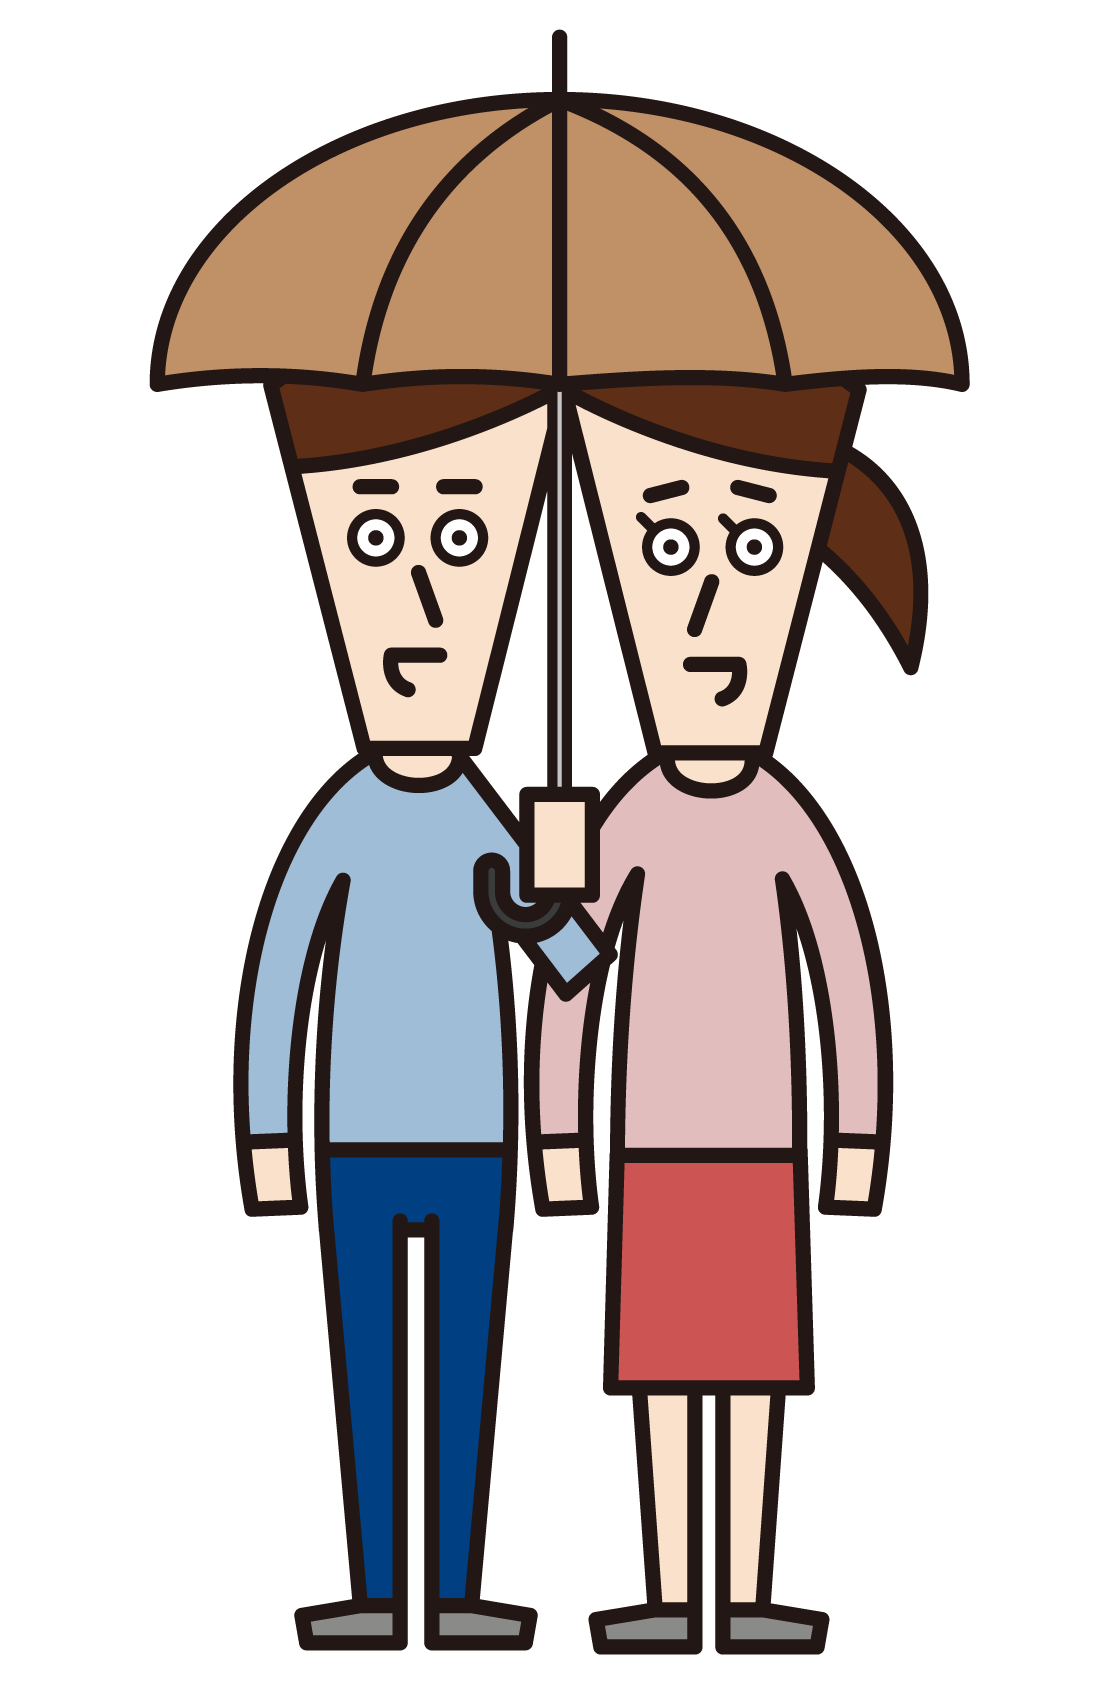 情侶（穿著便衣的人）的插圖，他們做相合傘